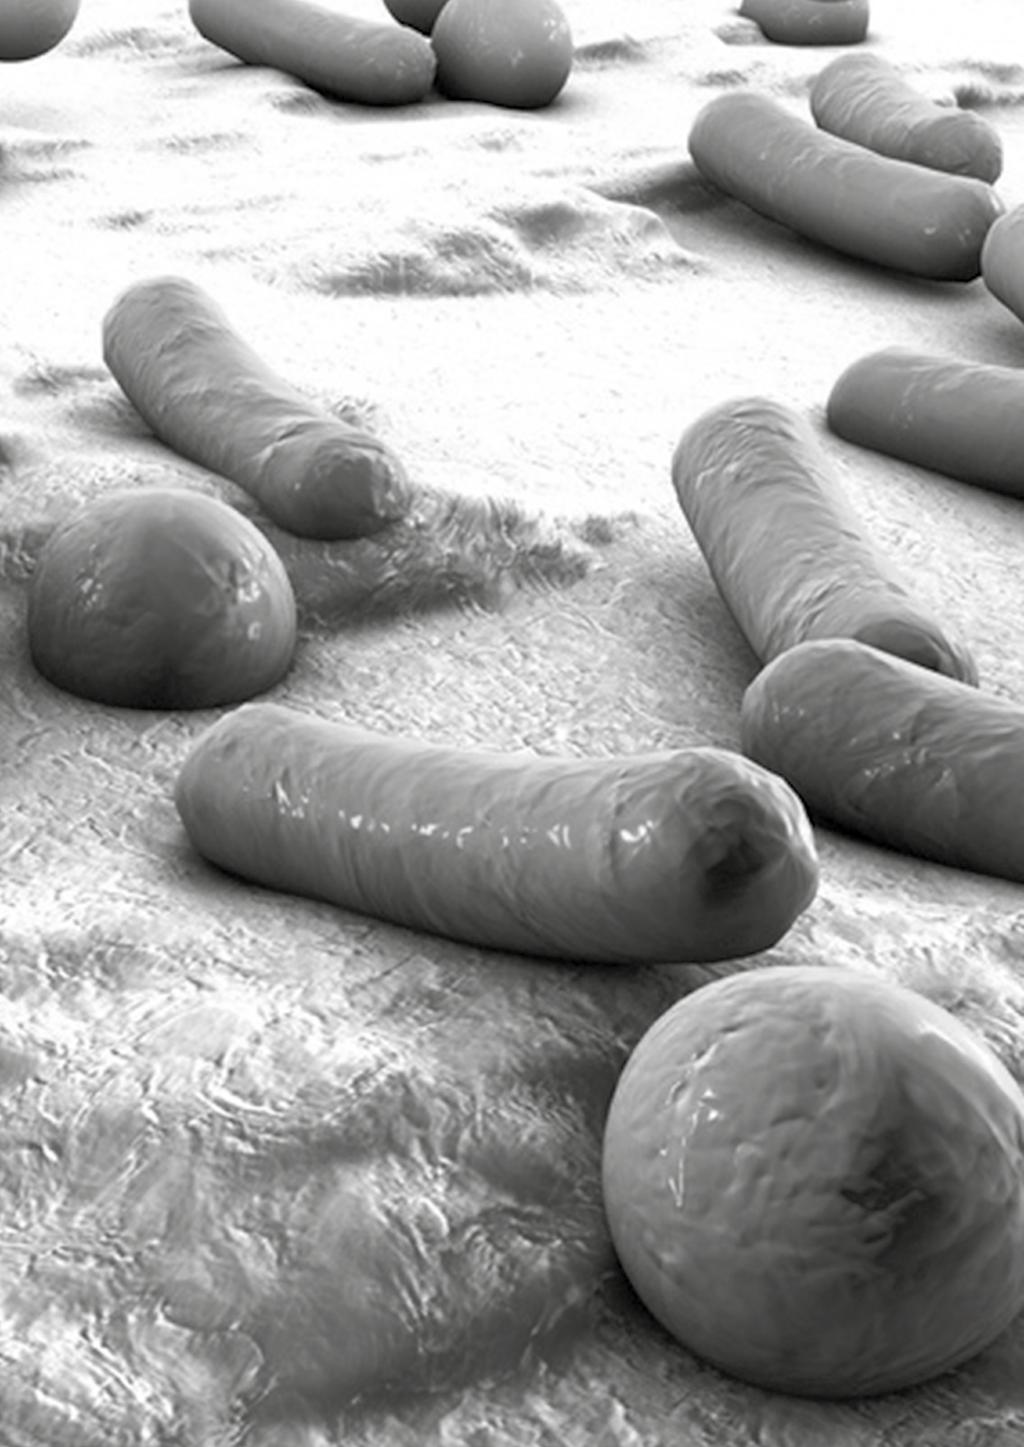 Het intestinale microbioom is een hot item. En dat is geen wonder: het microbioom heeft een enorm grote invloed op de menselijke gezondheid (zie afb.1).